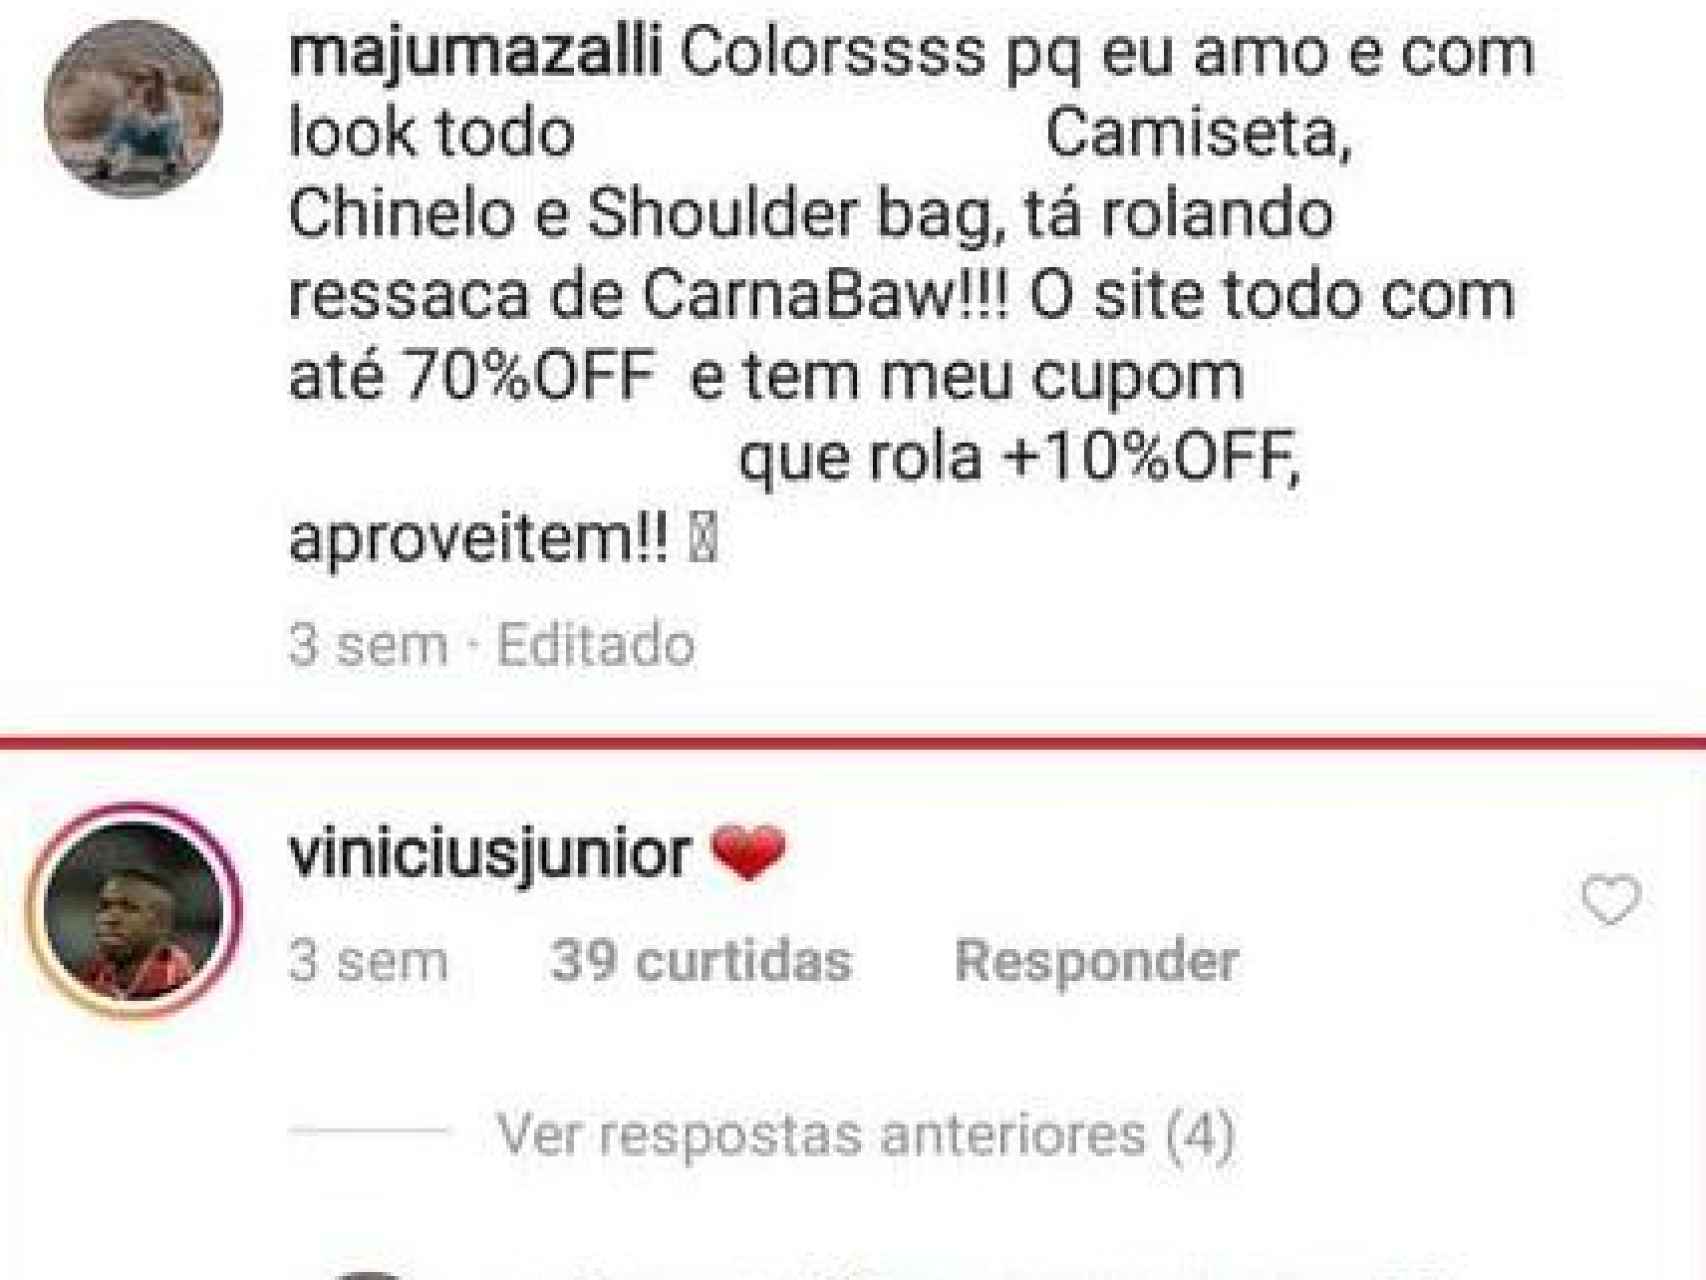 Vinicius Junior y María Julia intercambiando comentarios.